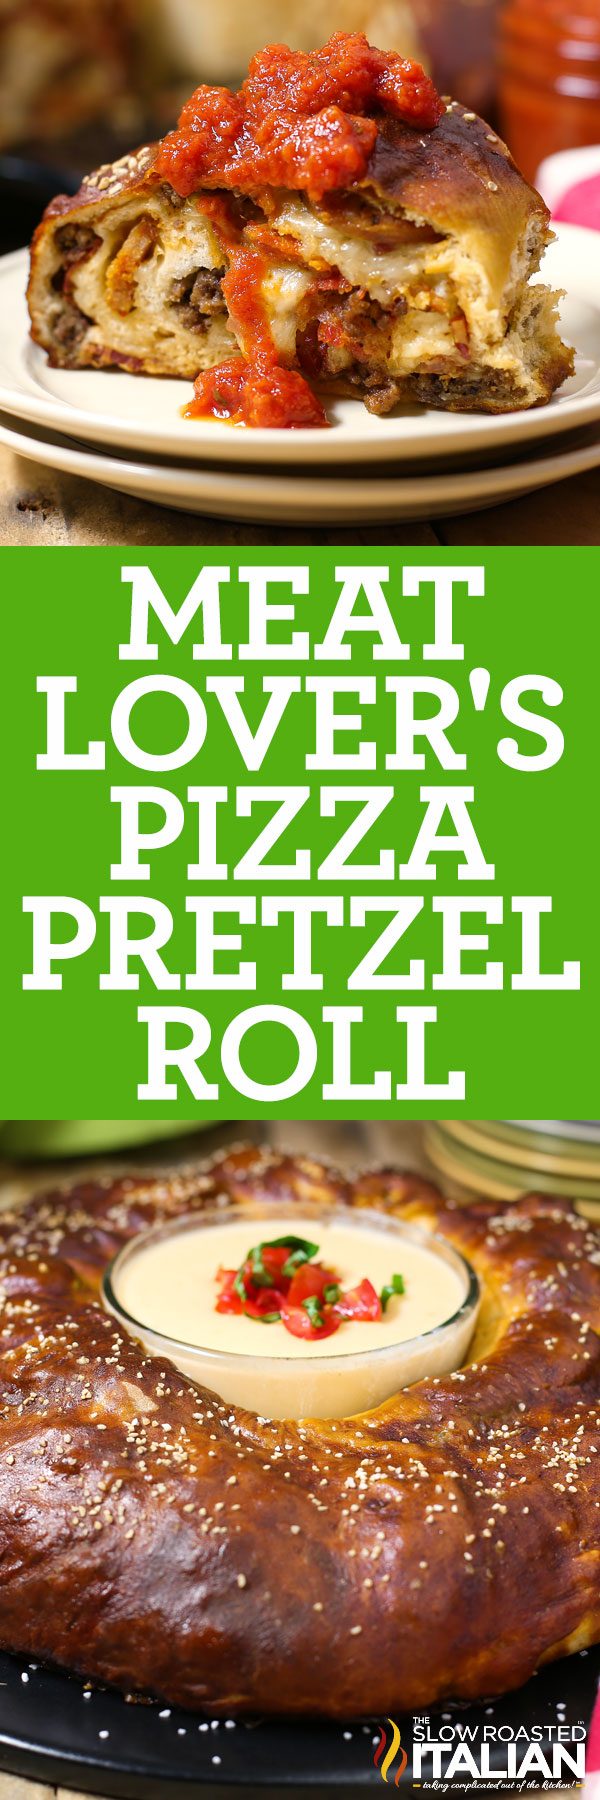 meat-lovers-pretzel-pizza-roll-pin-7019376